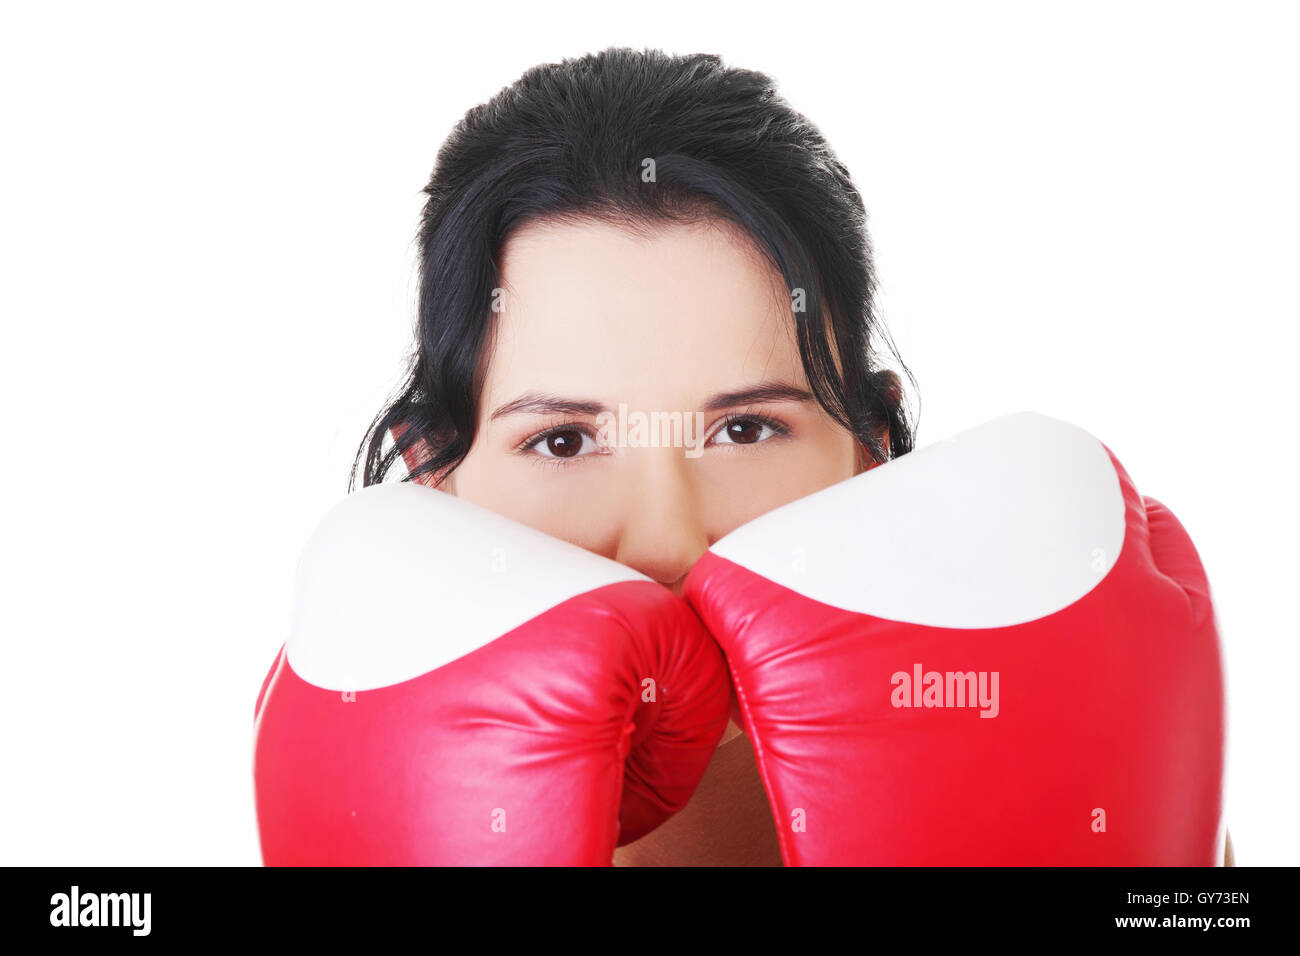 Attraktive junge Frau mit Boxhandschuhen. Closeup. Stockfoto